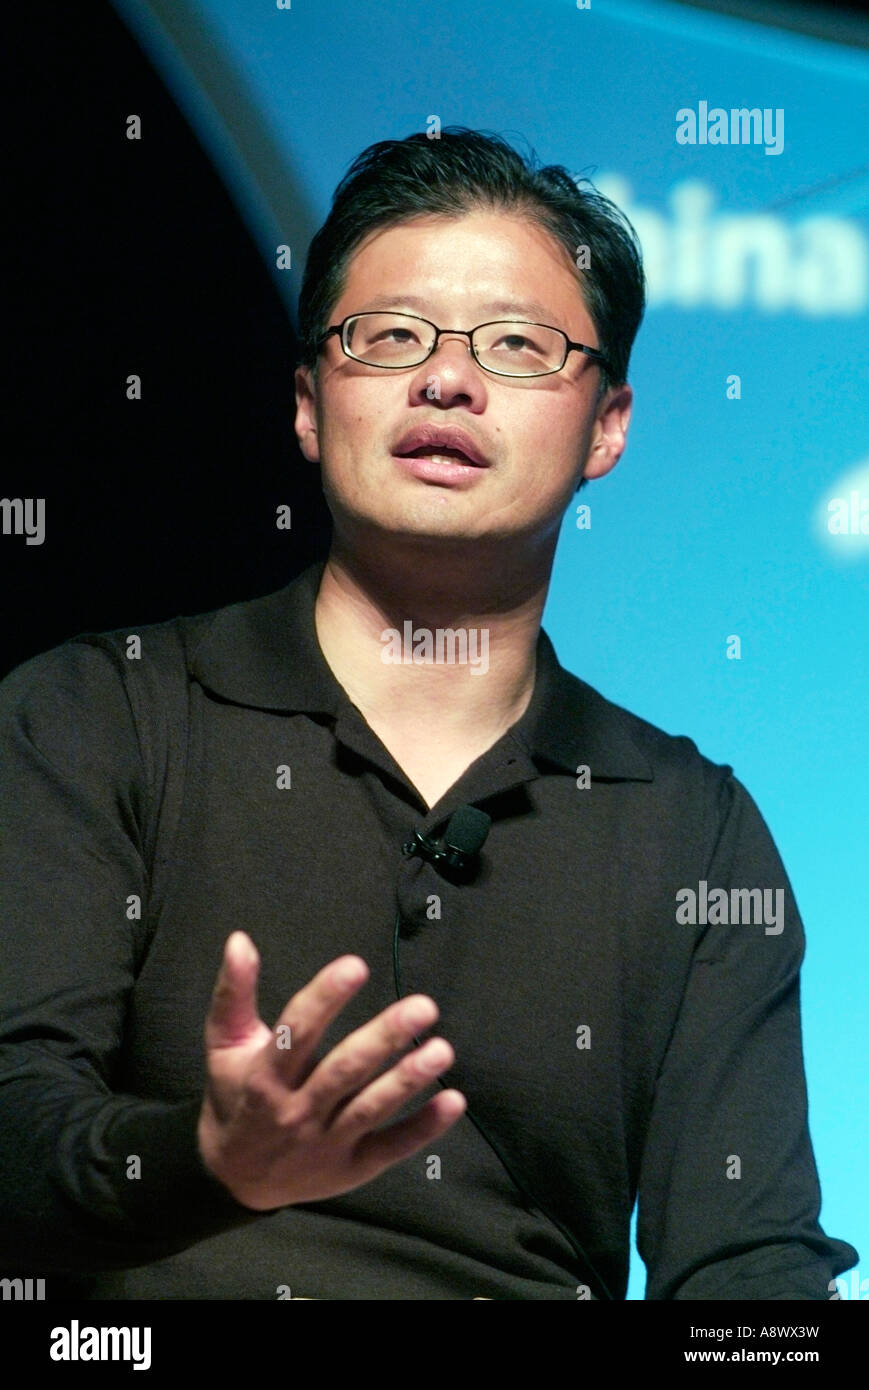 Jerry Yang Co-Gründer und Chief Executive Officer von Yahoo! Inc. während einer Rede in Silicon Valley CA Foto von Chuck Nacke Stockfoto